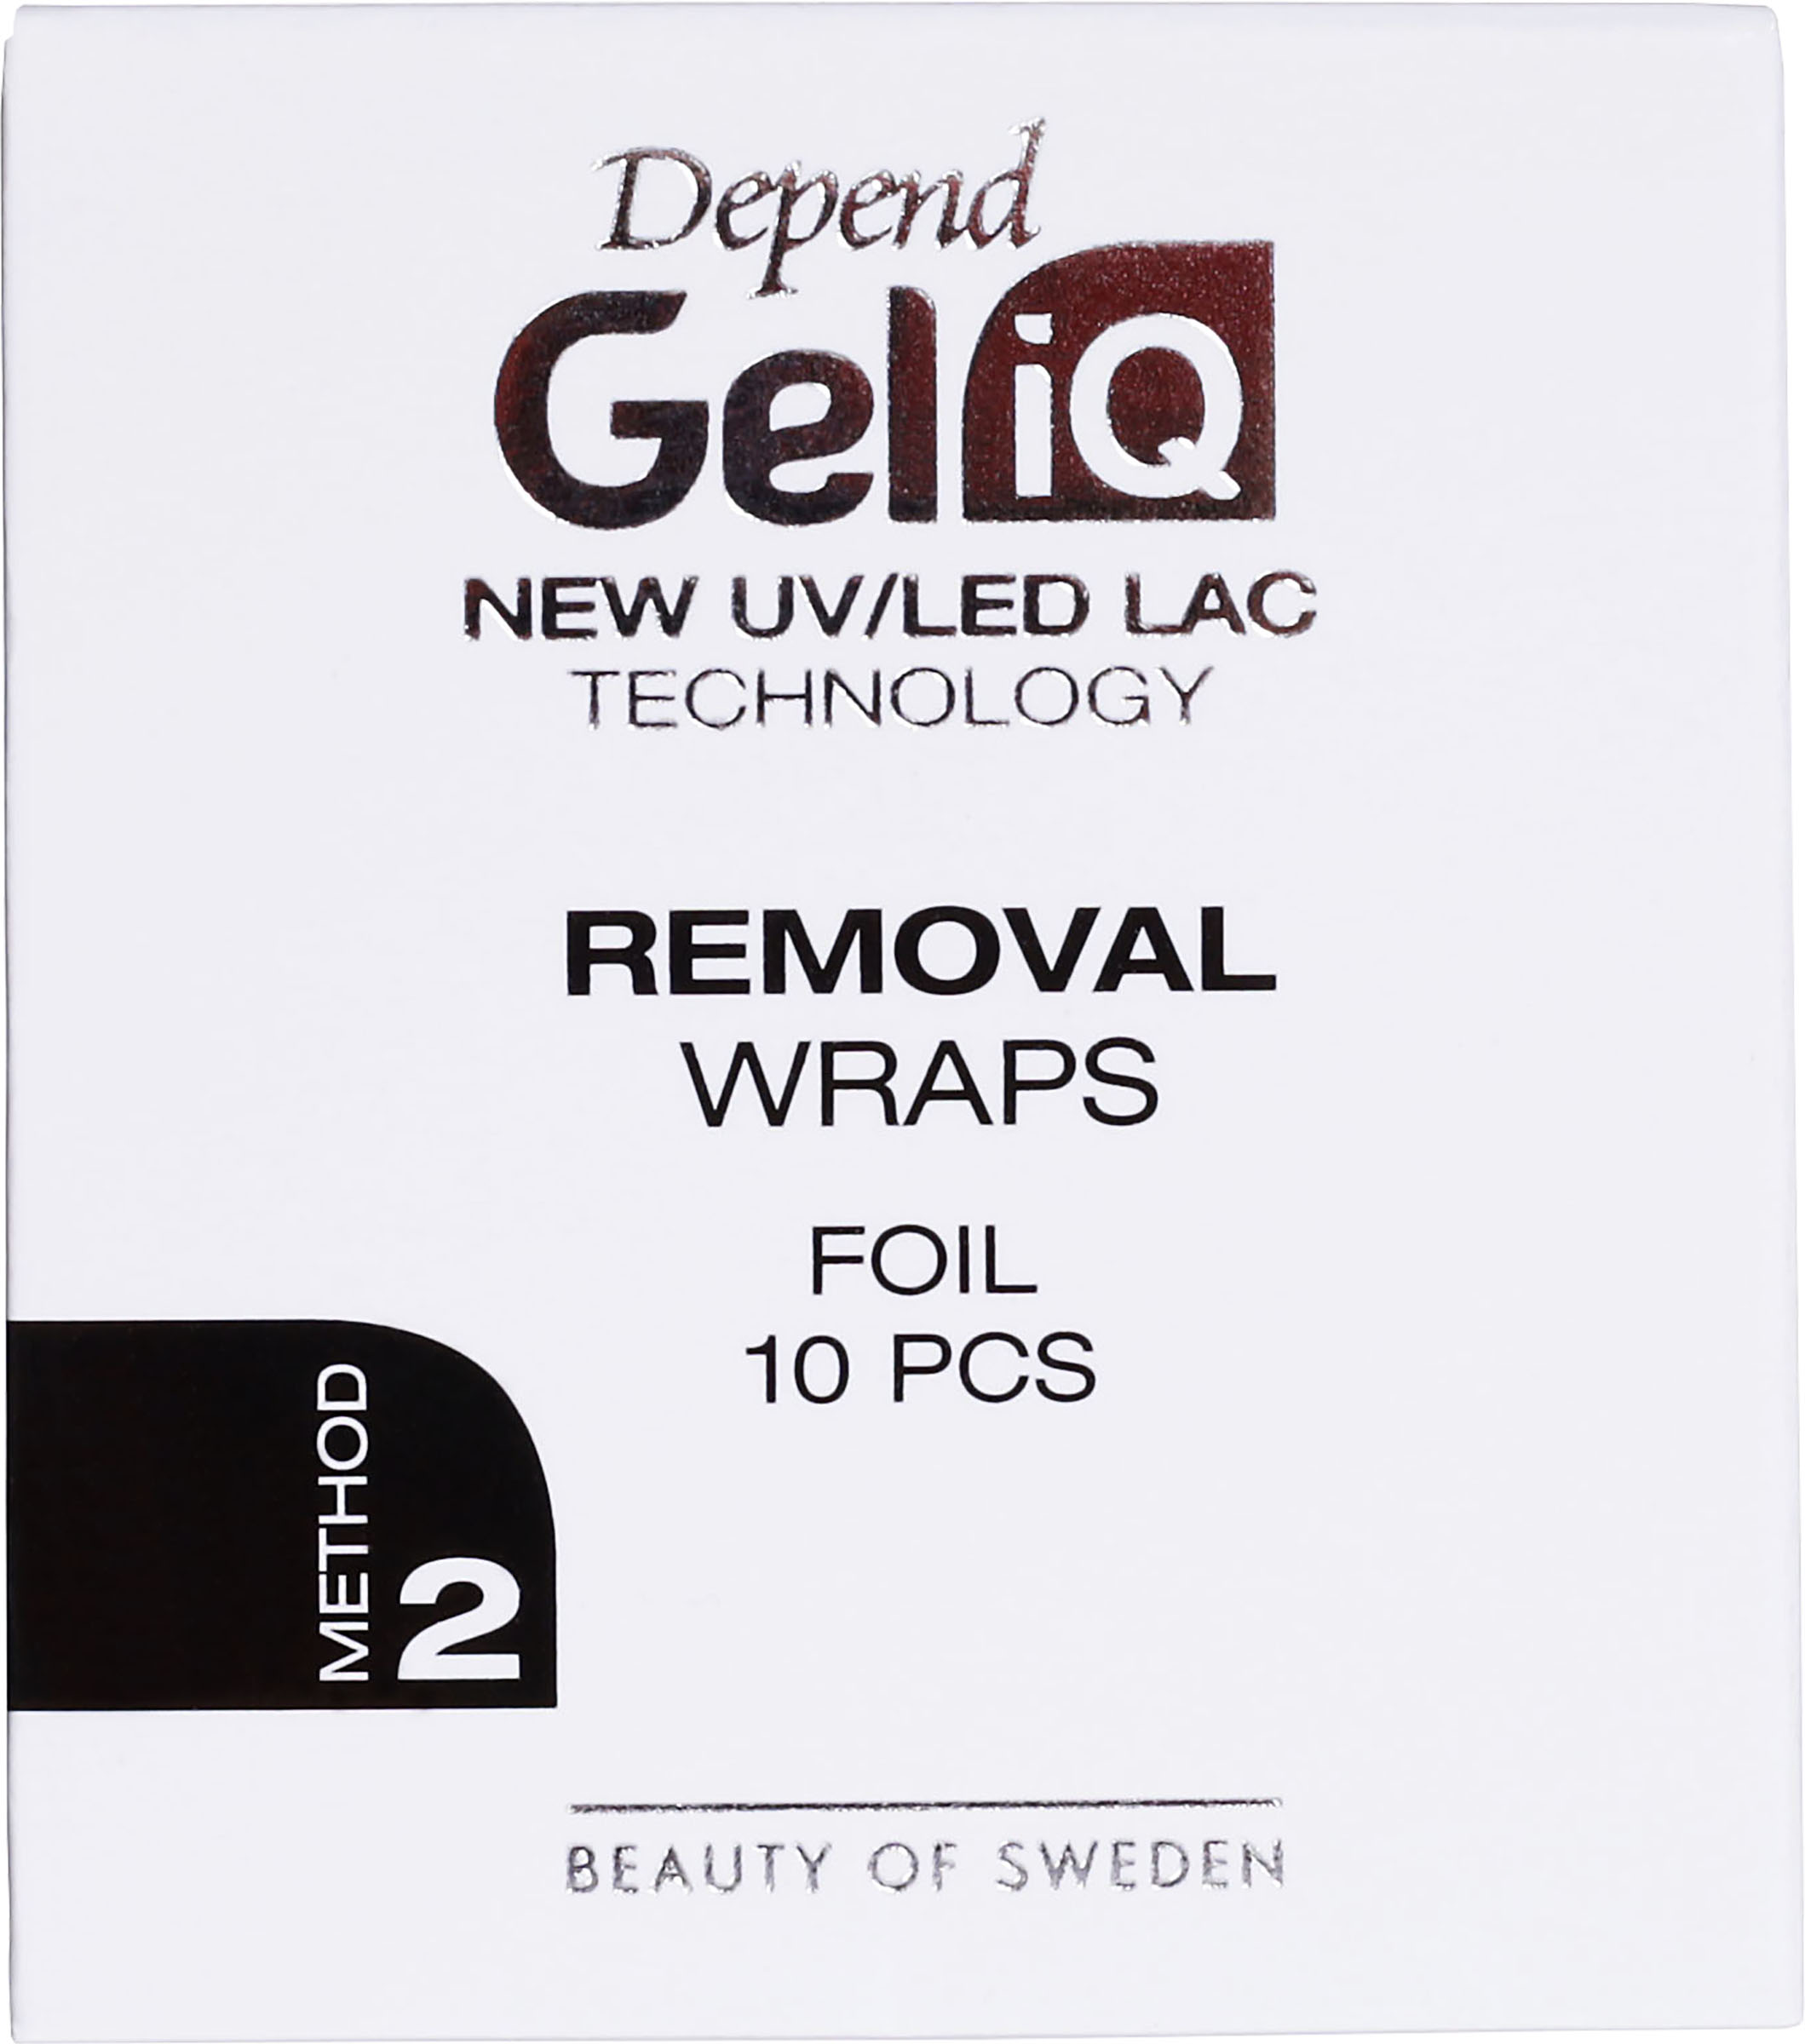 Depend Gel iQ Rem Wraps Foil 10pcs 1st